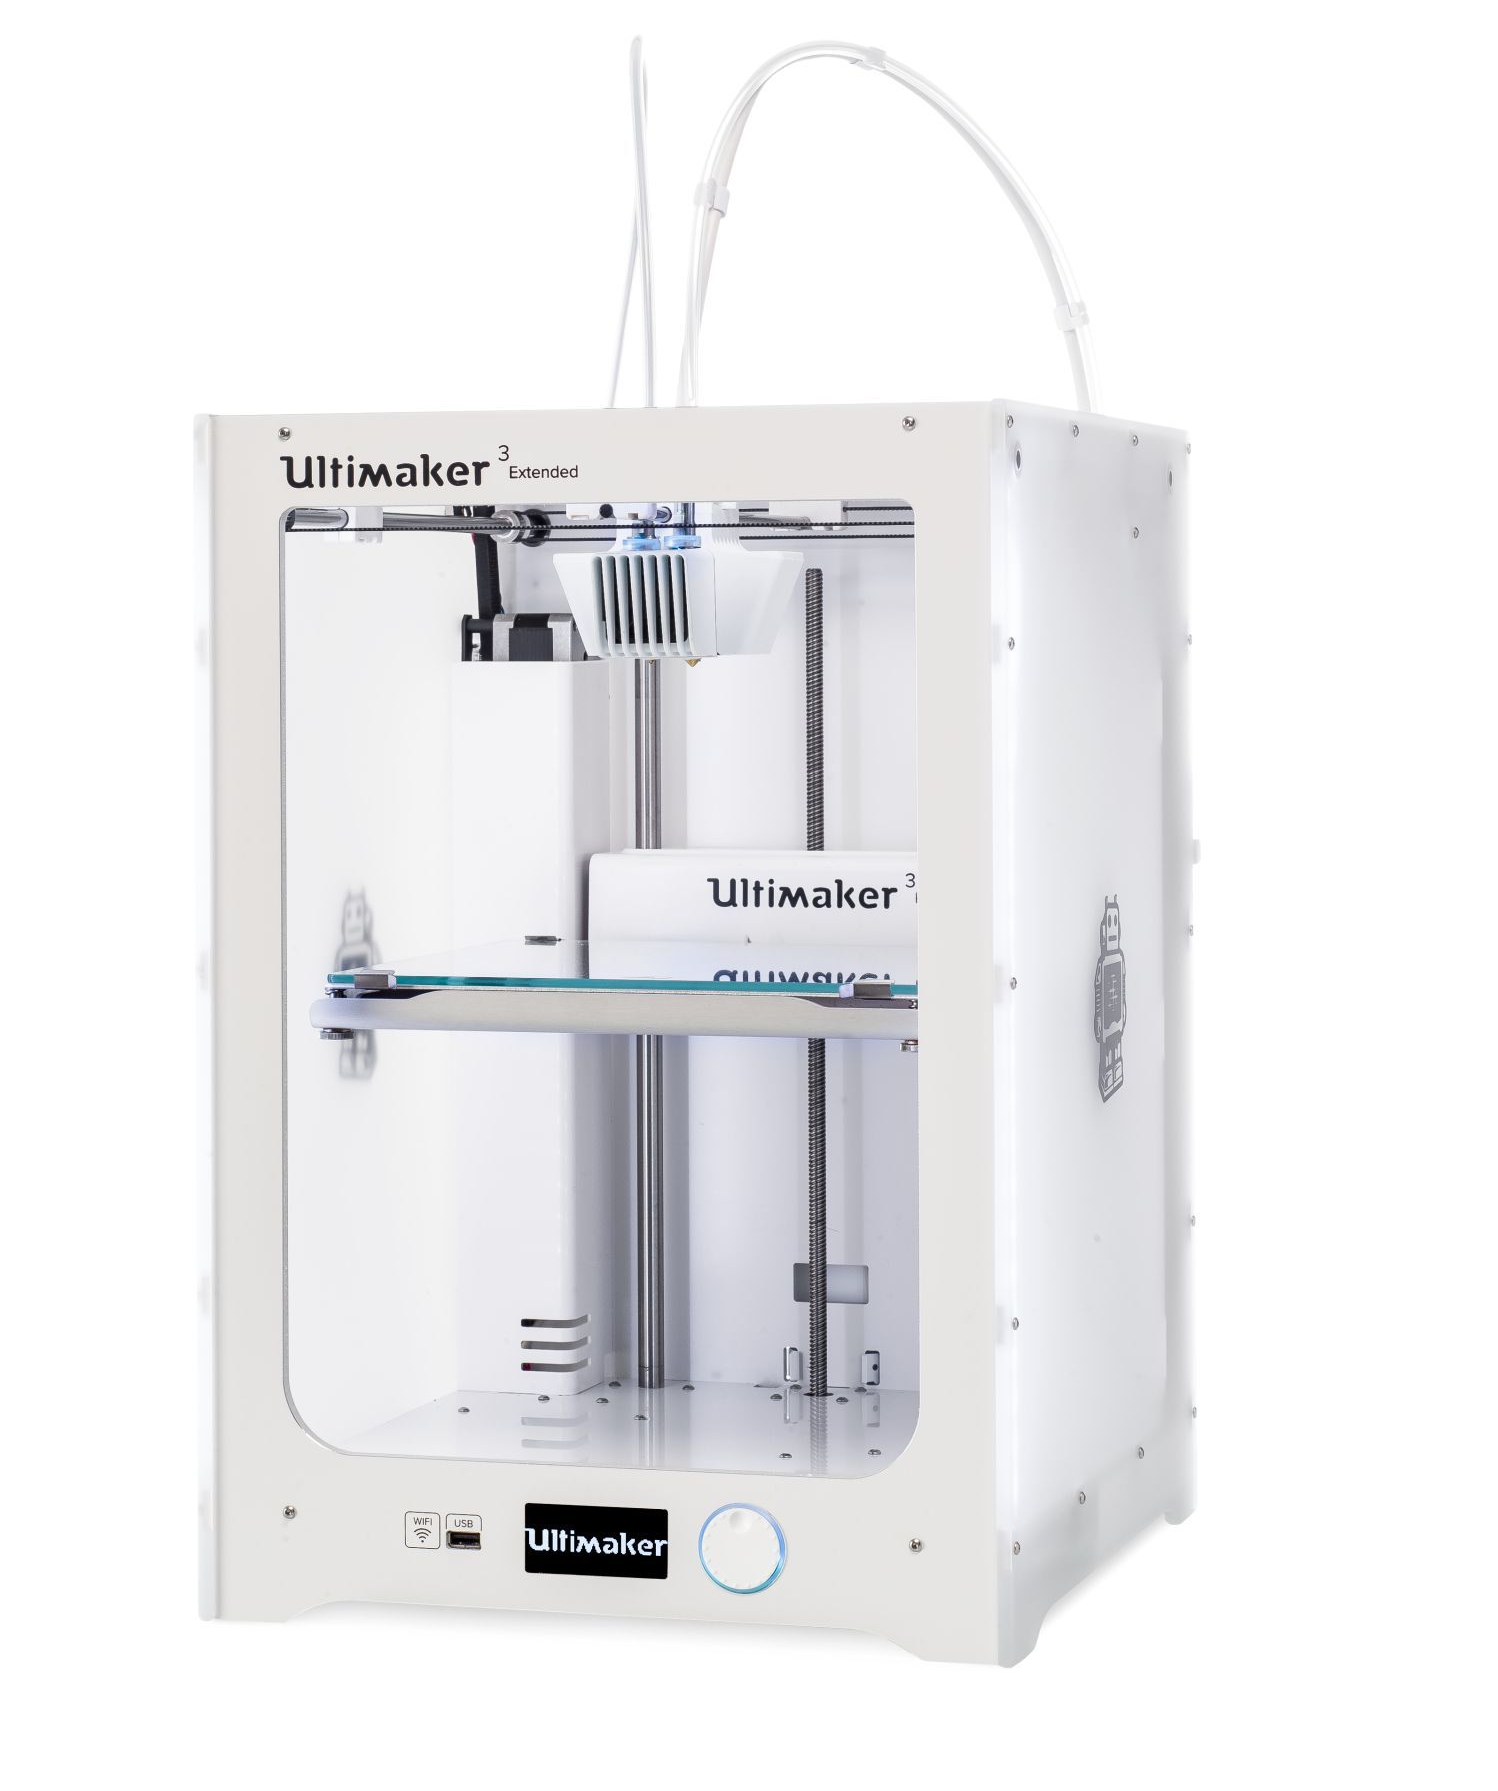 Ultimaker3 Extanded - 3D Printer